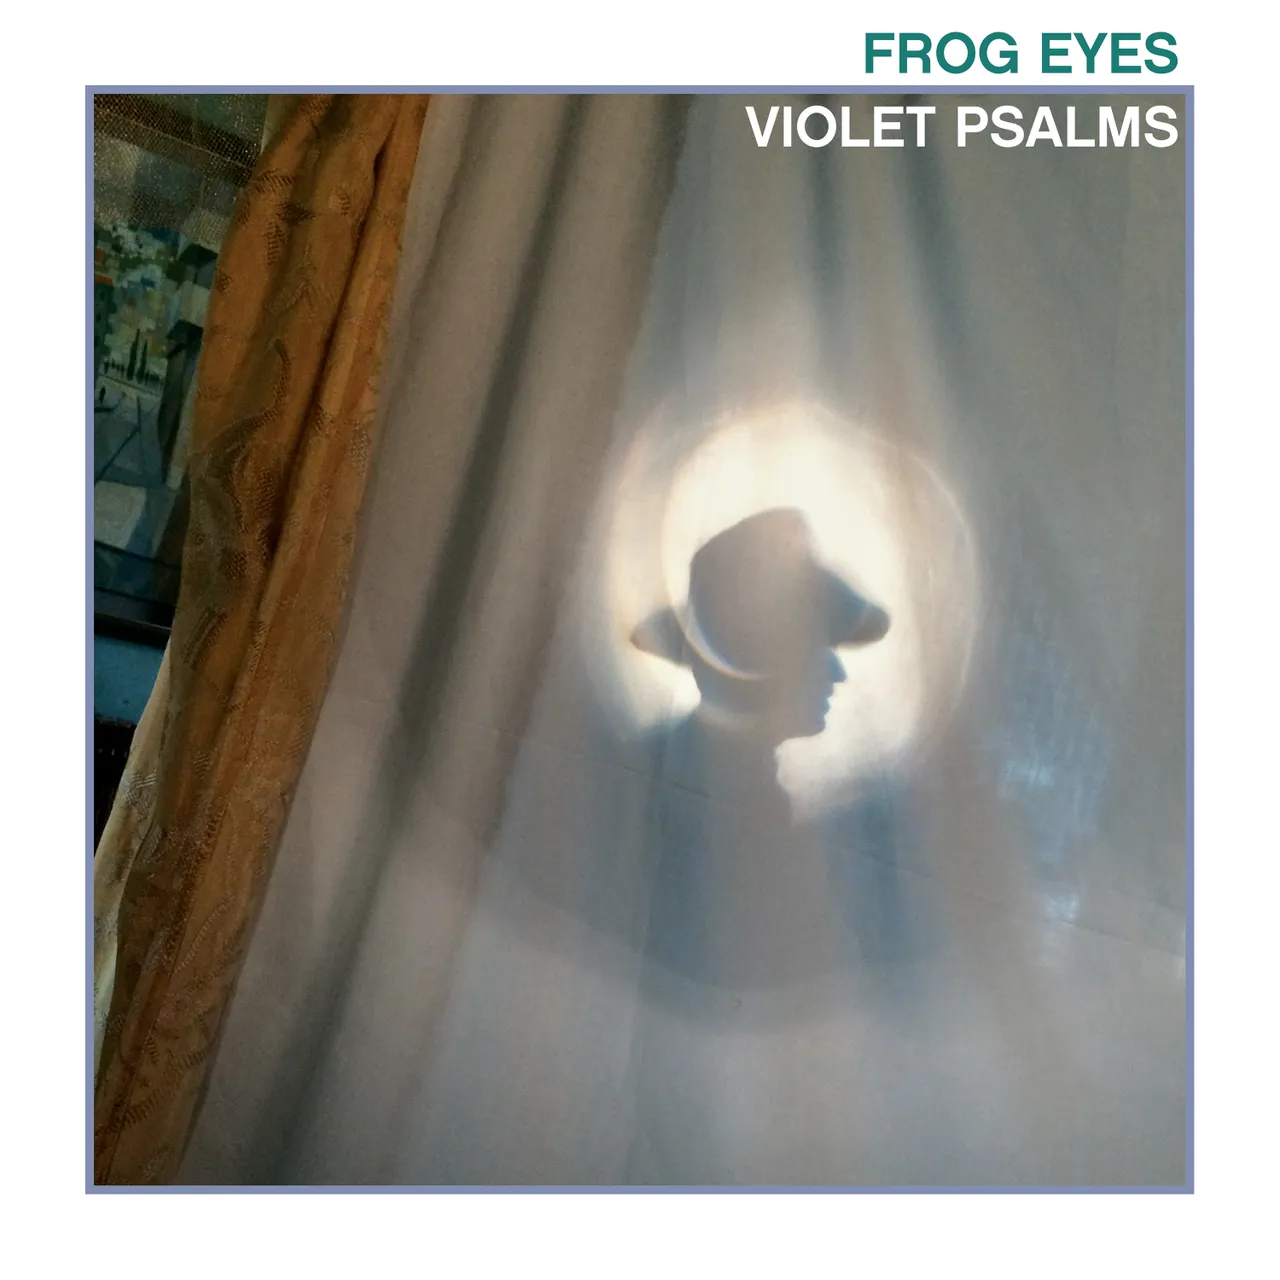 Frog Eyes - "Violet Psalms" Limited Edition White Vinyl photo 1